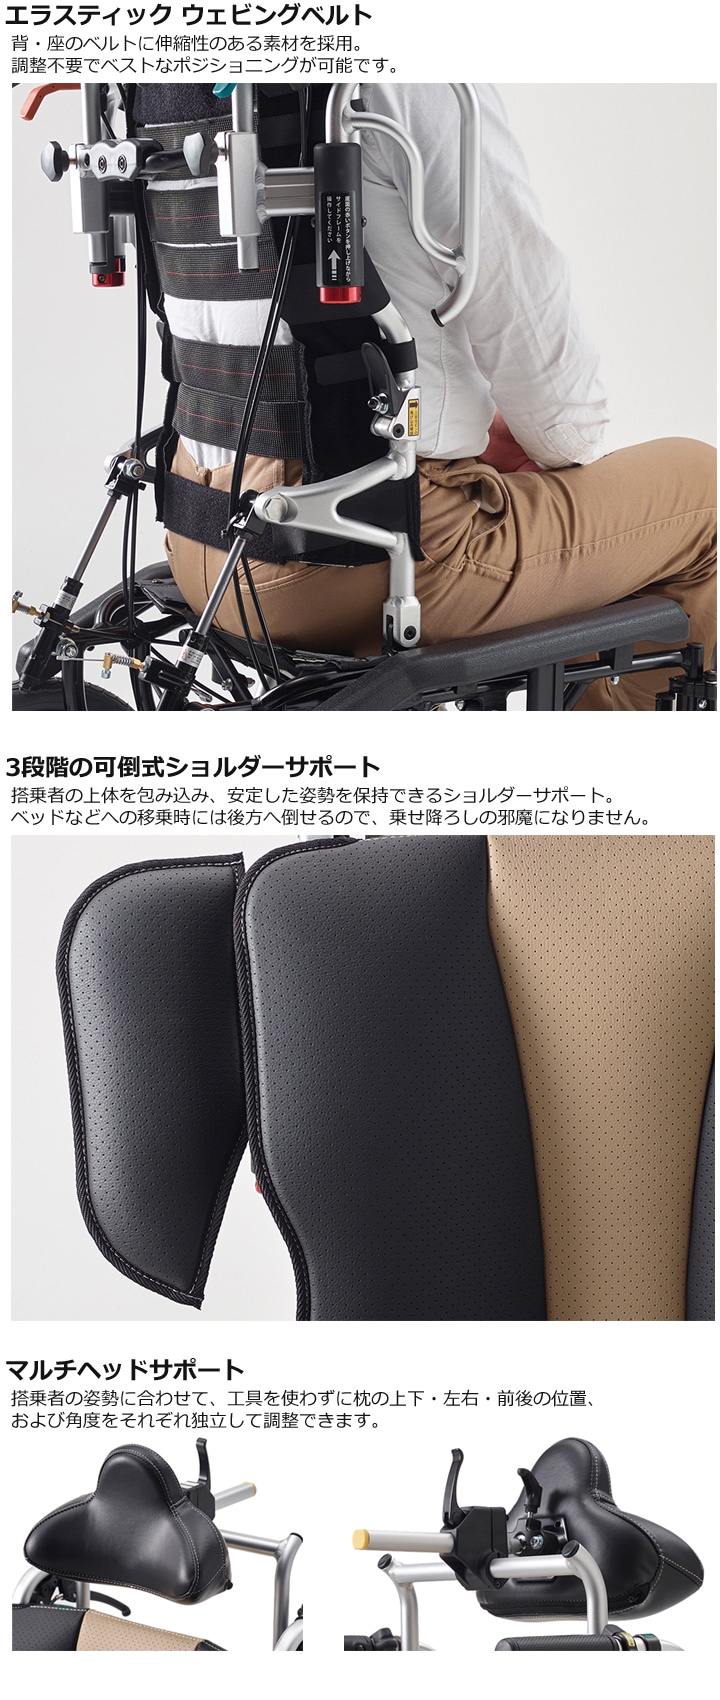 背・座のベルトに伸縮性のある素材を採用。
調整不要でベストなポジショニングが可能です。